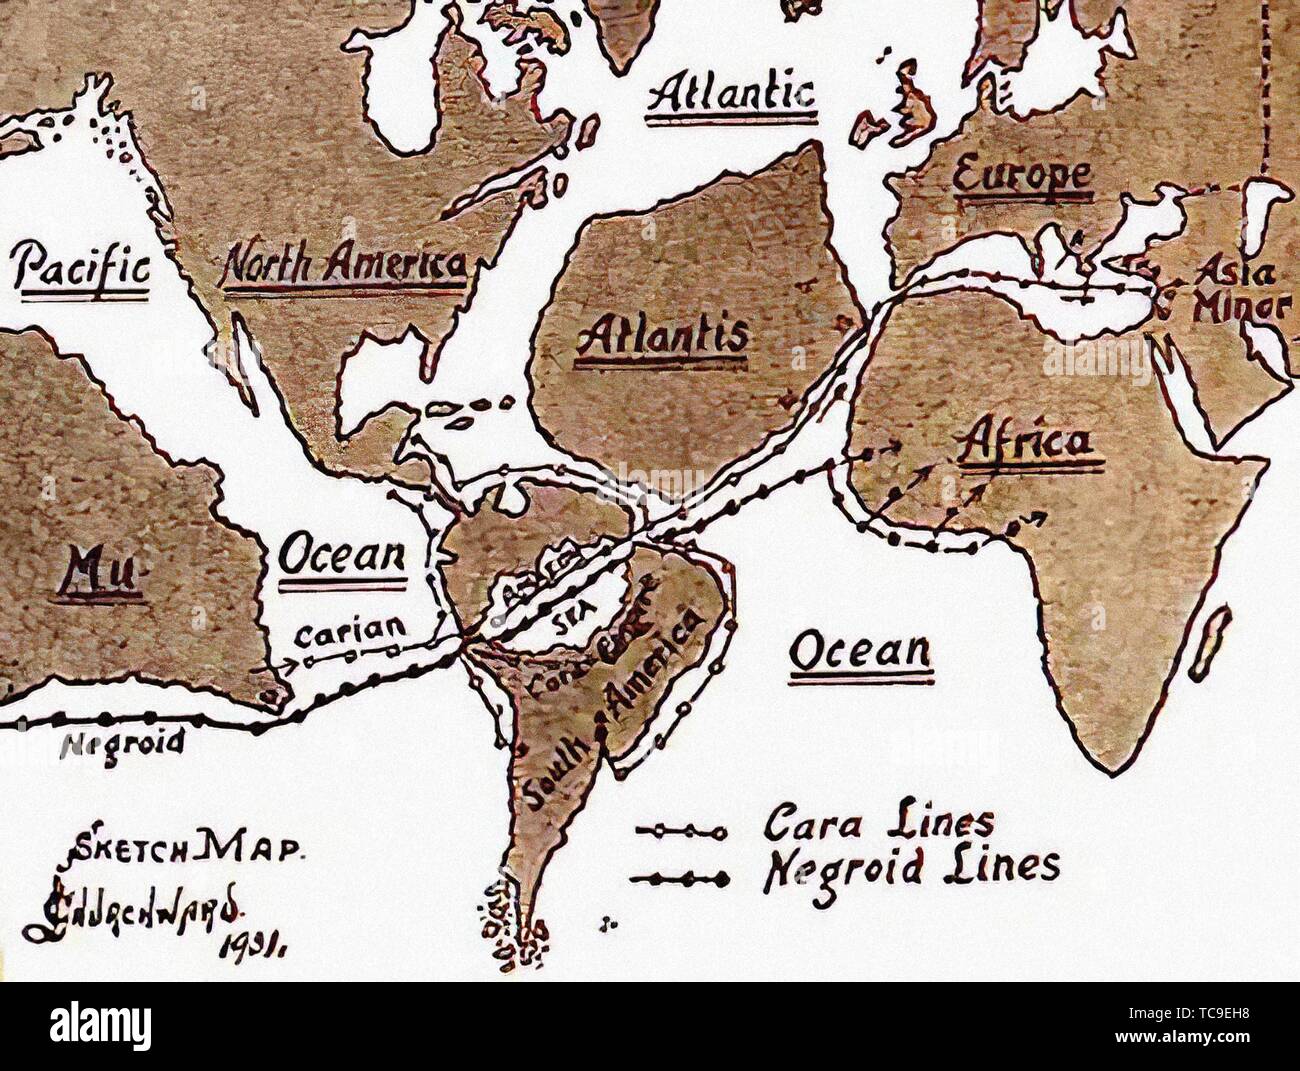 James Churchward la mappa che mostra come egli pensava Mu rifugiati distesa dopo il cataclisma attraverso il Sud America, lungo le rive di Atlantis e in Foto Stock